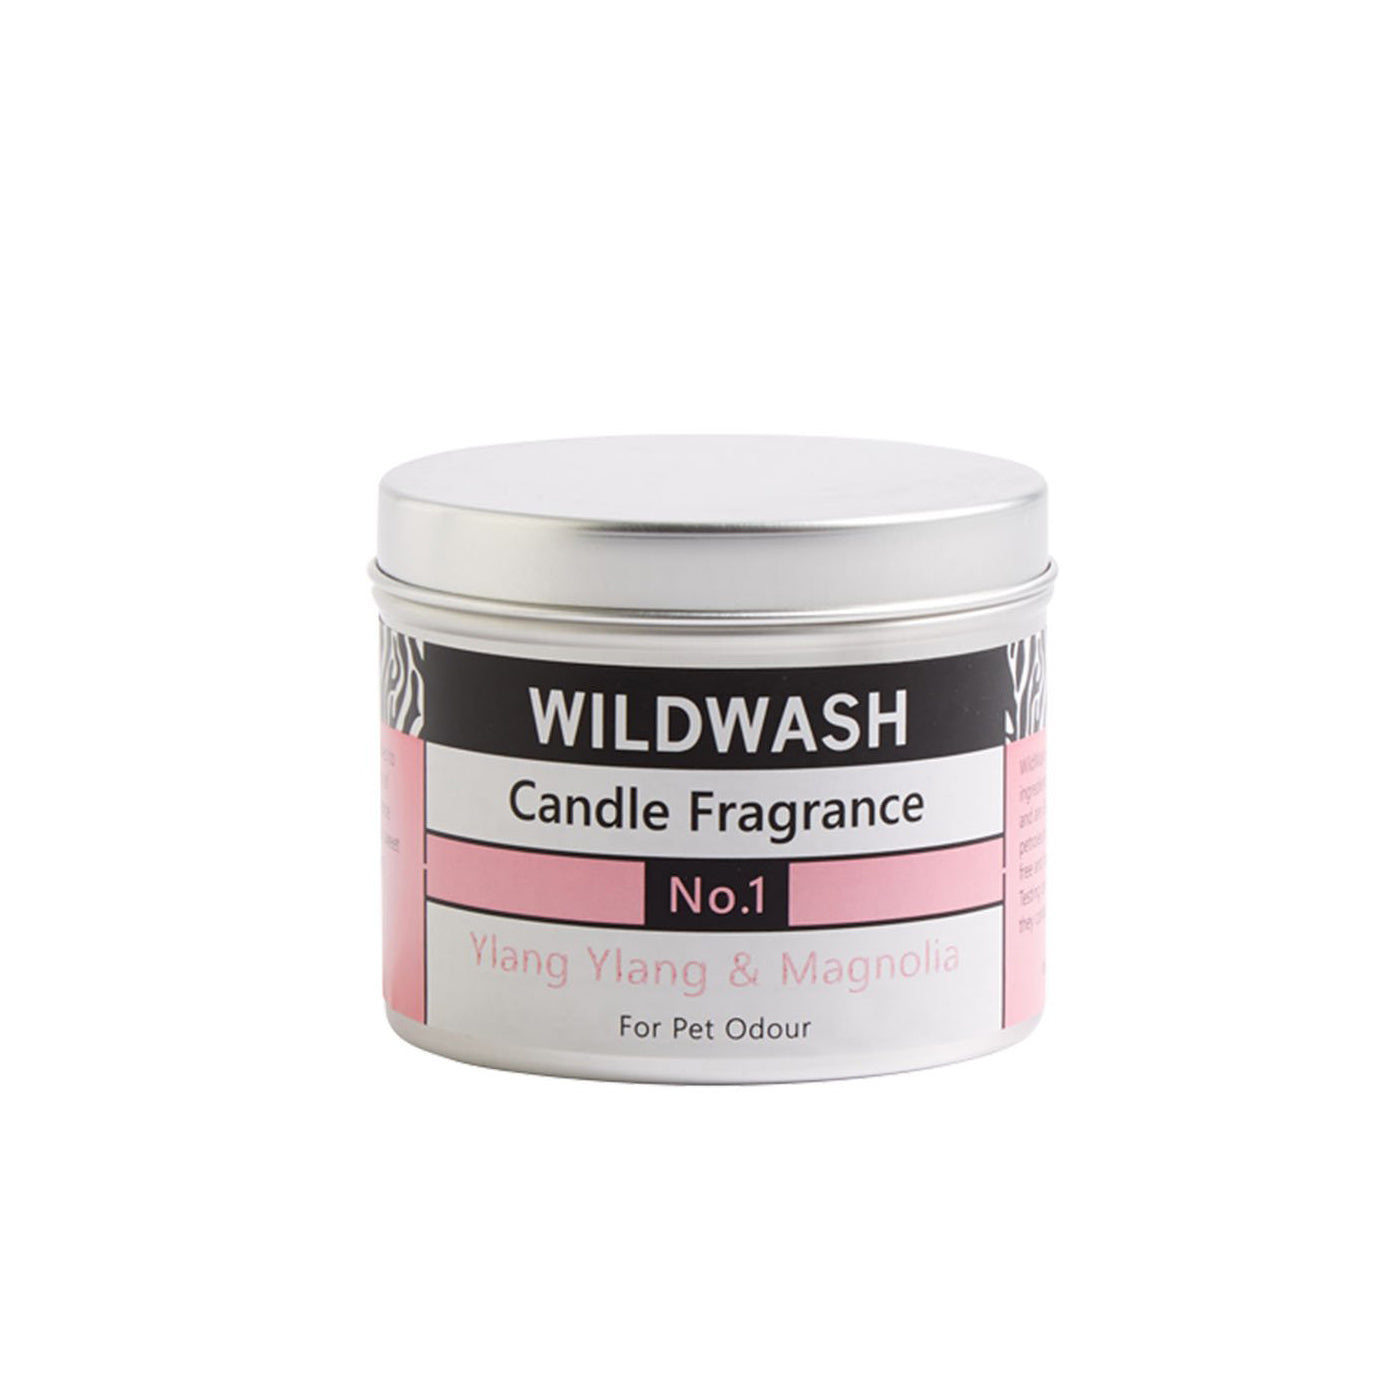 WildWash Natural Candle Fragrance No.1 Tin